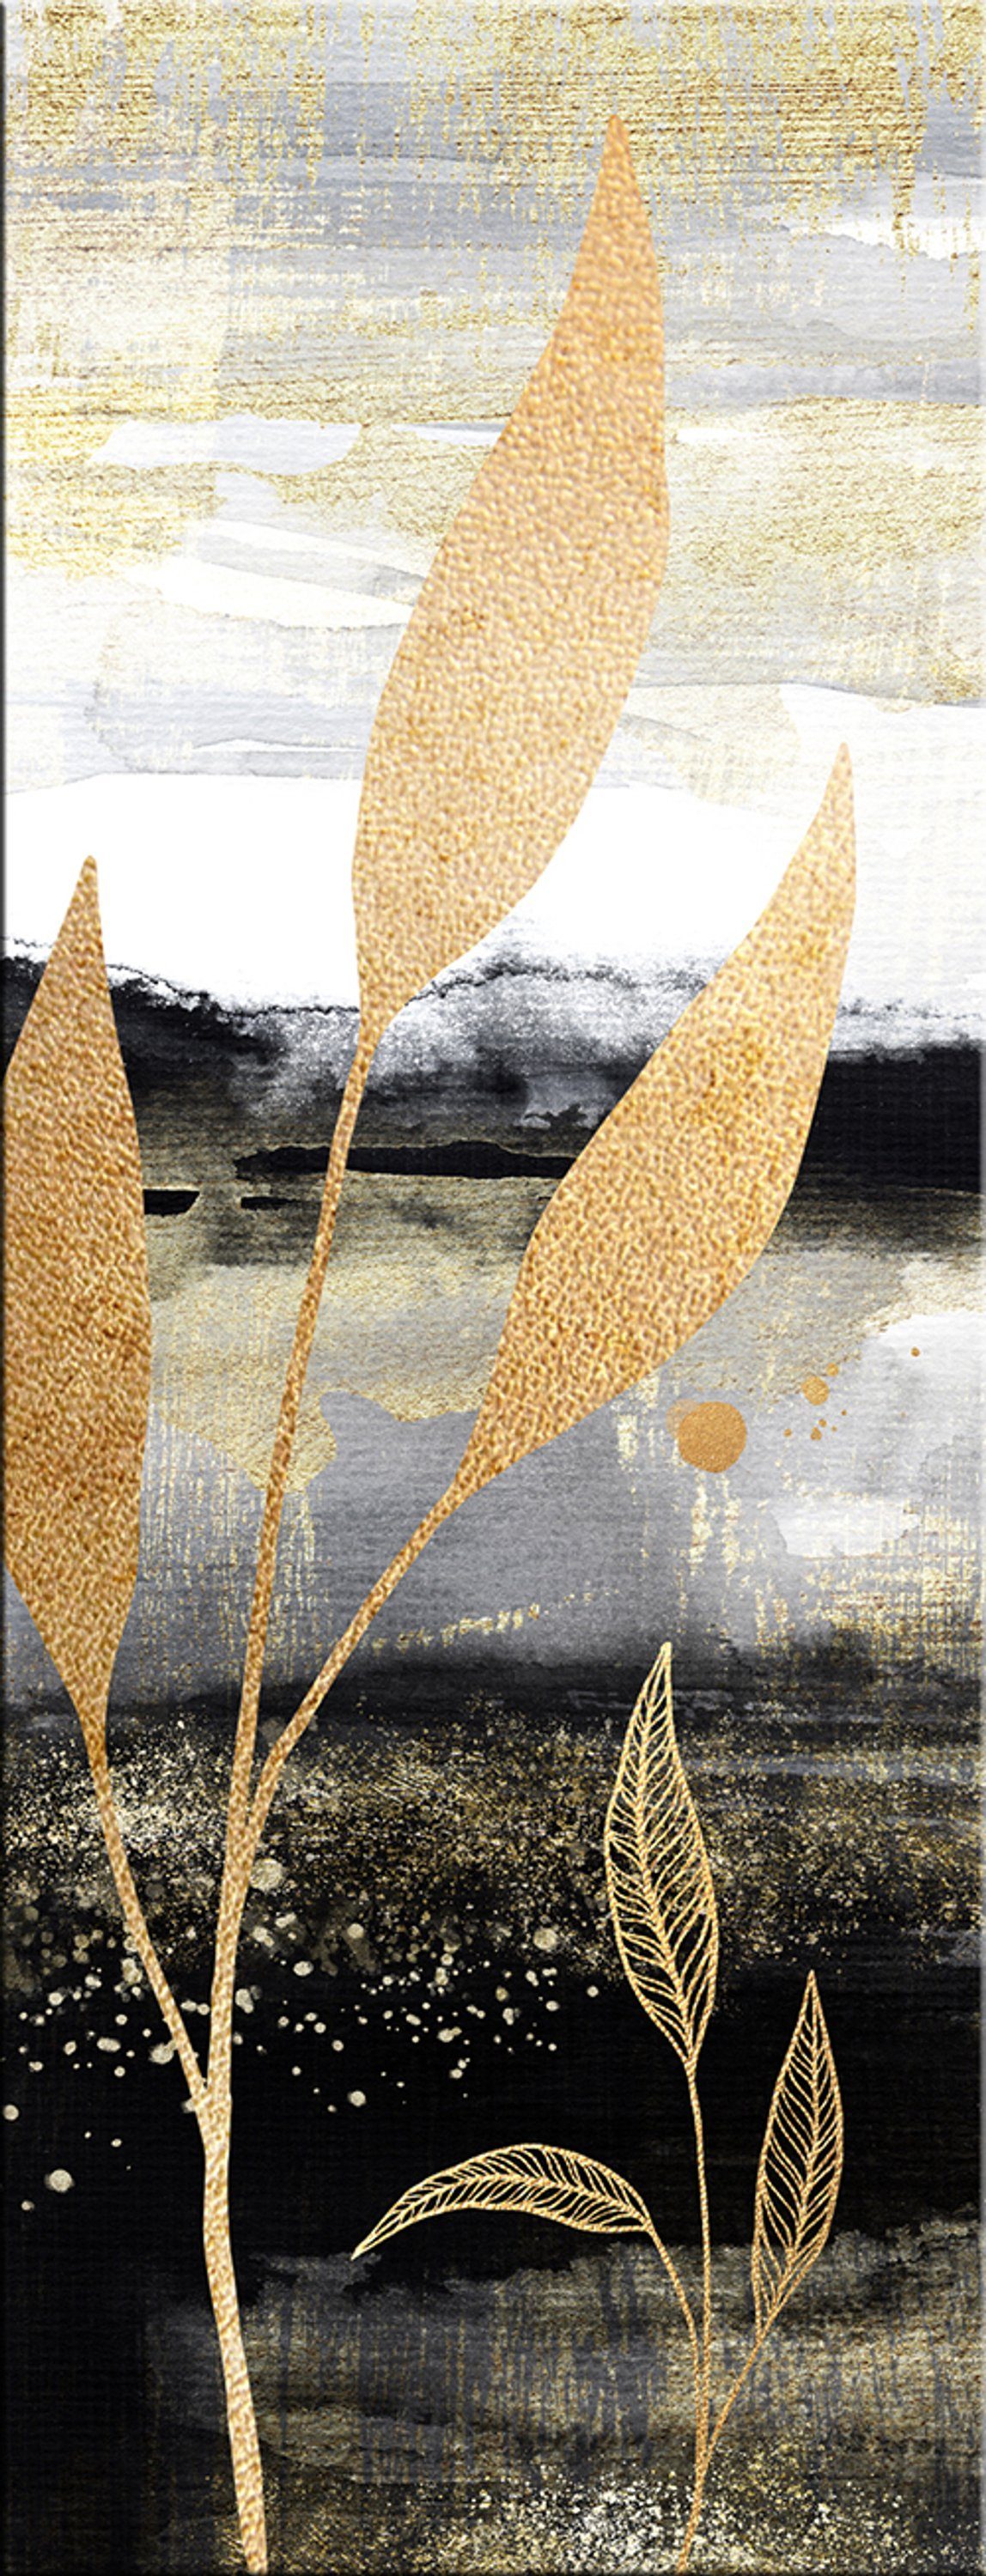 artissimo Glasbild Glasbild 30x80cm Bild aus Glas Aquarell-Malerei Zweige schwarz gold, Natur und Pflanzen: Dekorative Kunst II